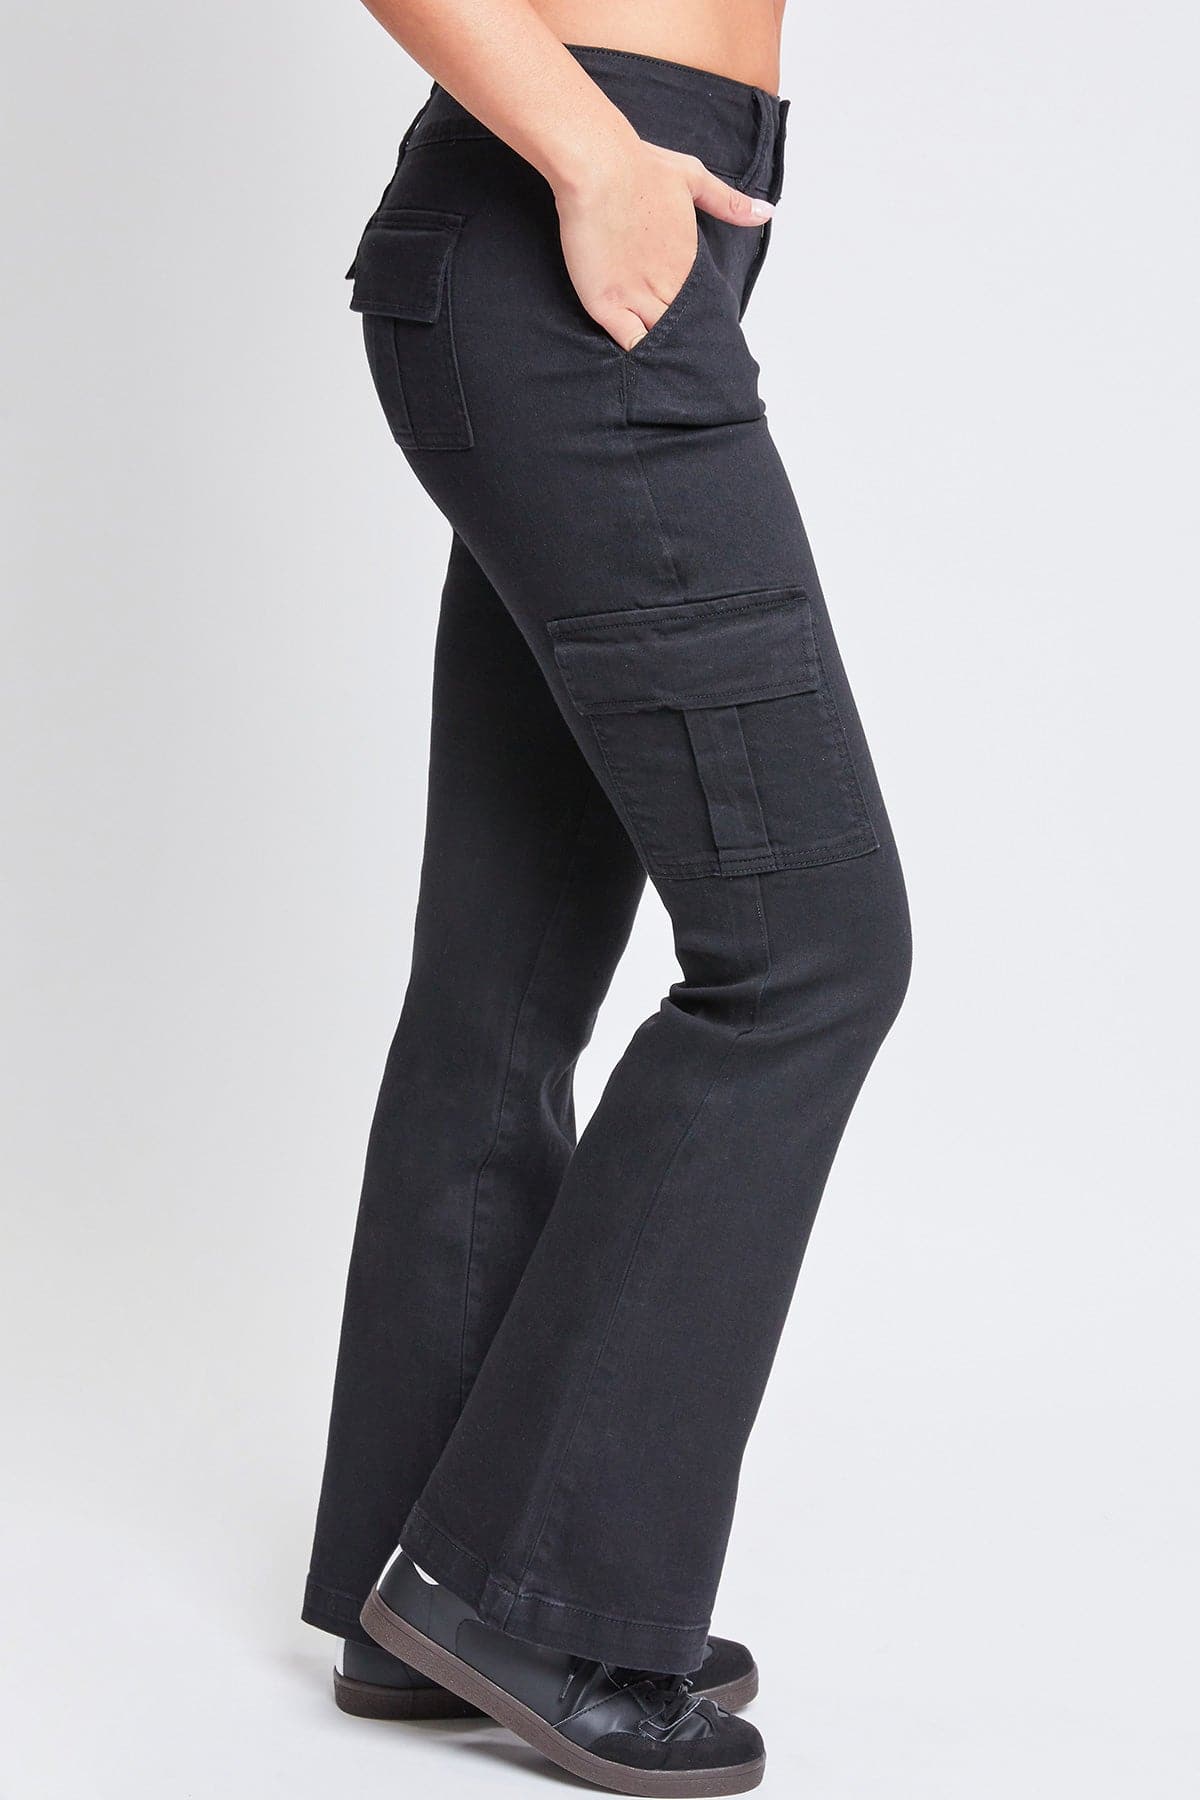 Women's Low Rise Cargo Flare Jean